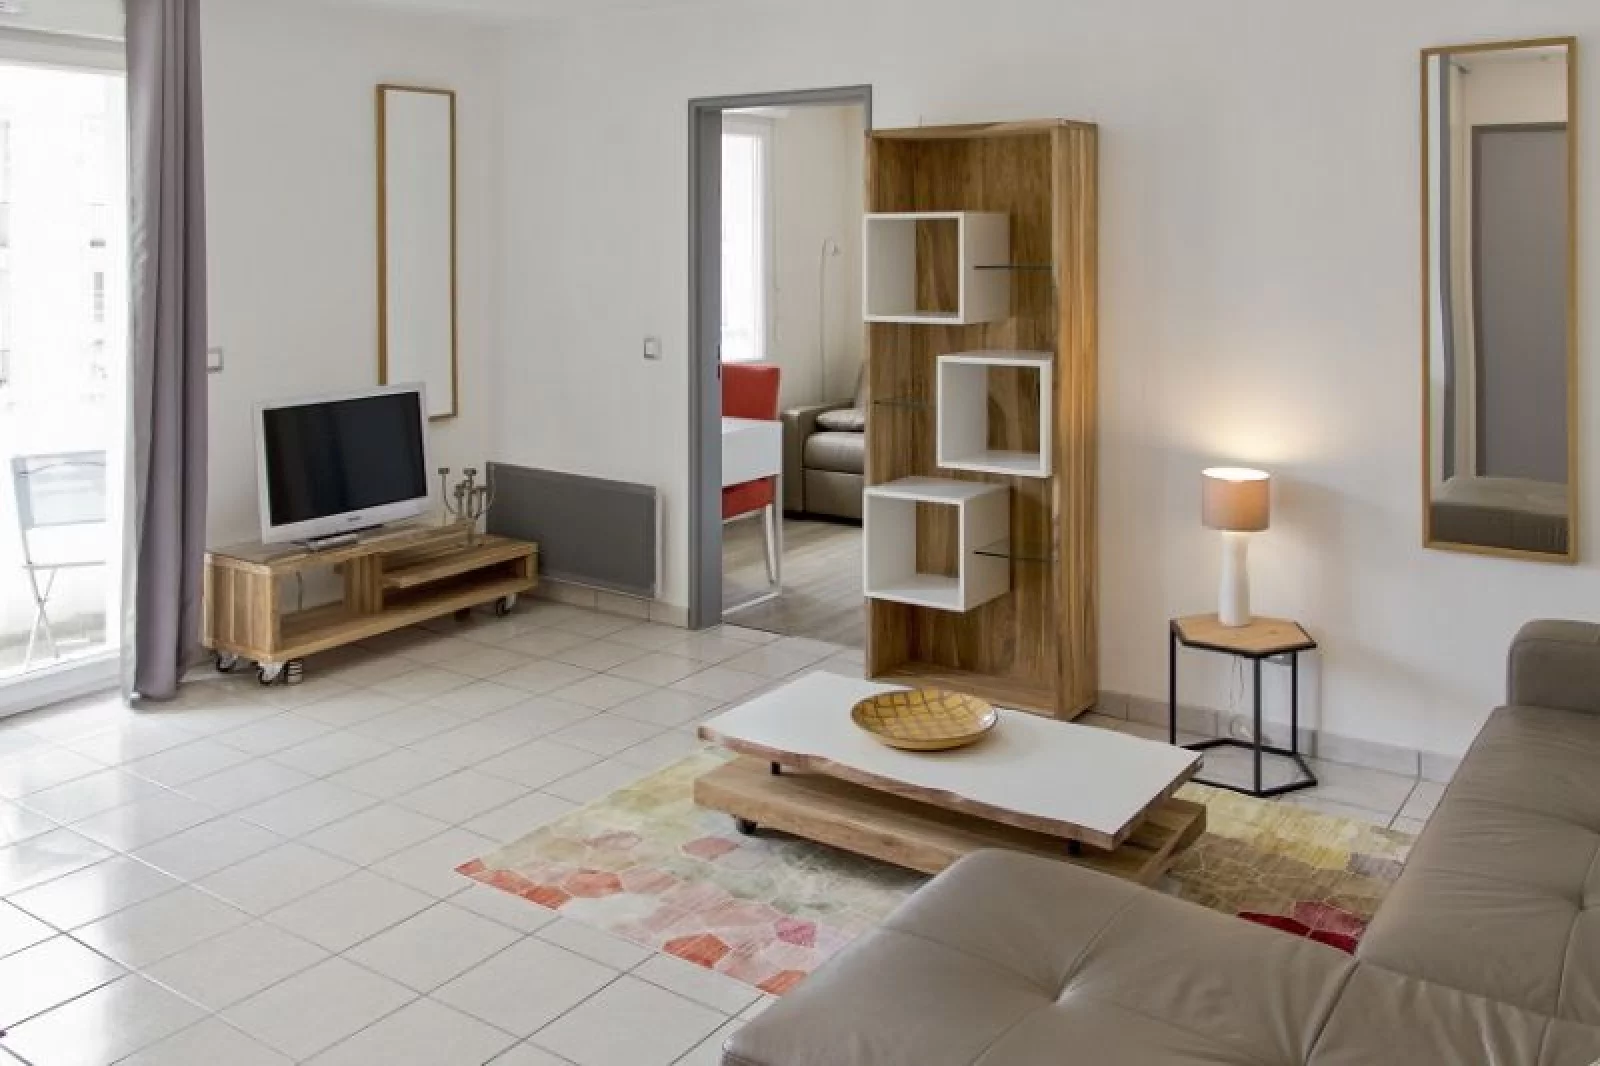 Location appartement meublé 3 pièces 52m² (Bordeaux - Chartrons)